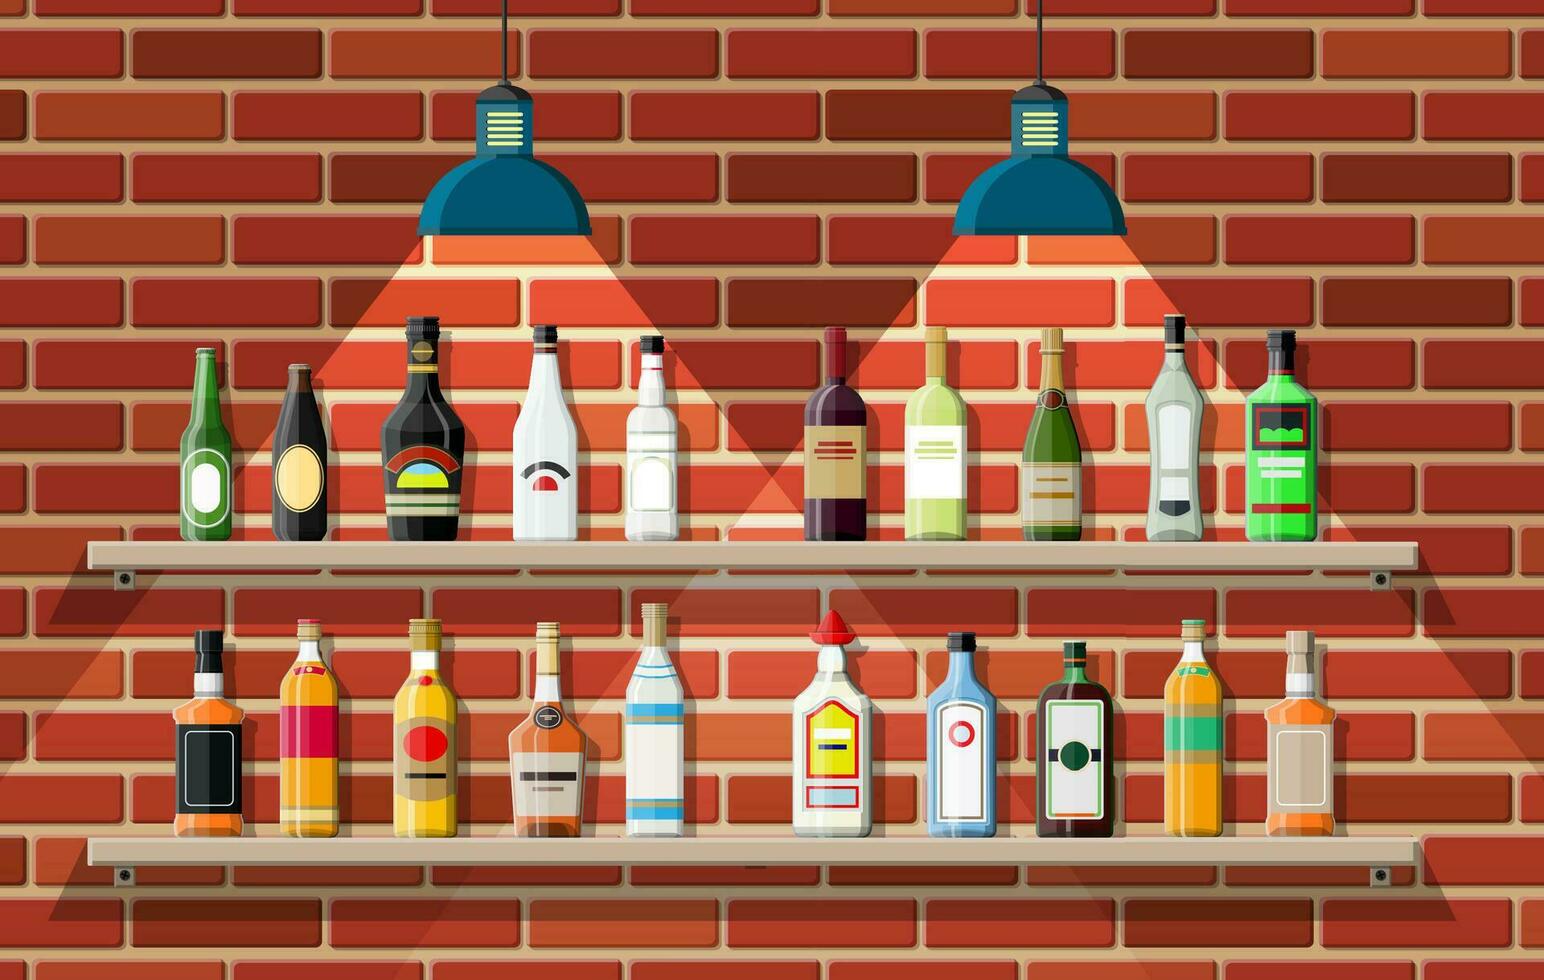 drinken vestiging. interieur van kroeg, cafe of bar. bar balie, schappen met alcohol flessen, lamp. houten en steen decor. vector illustratie in vlak stijl